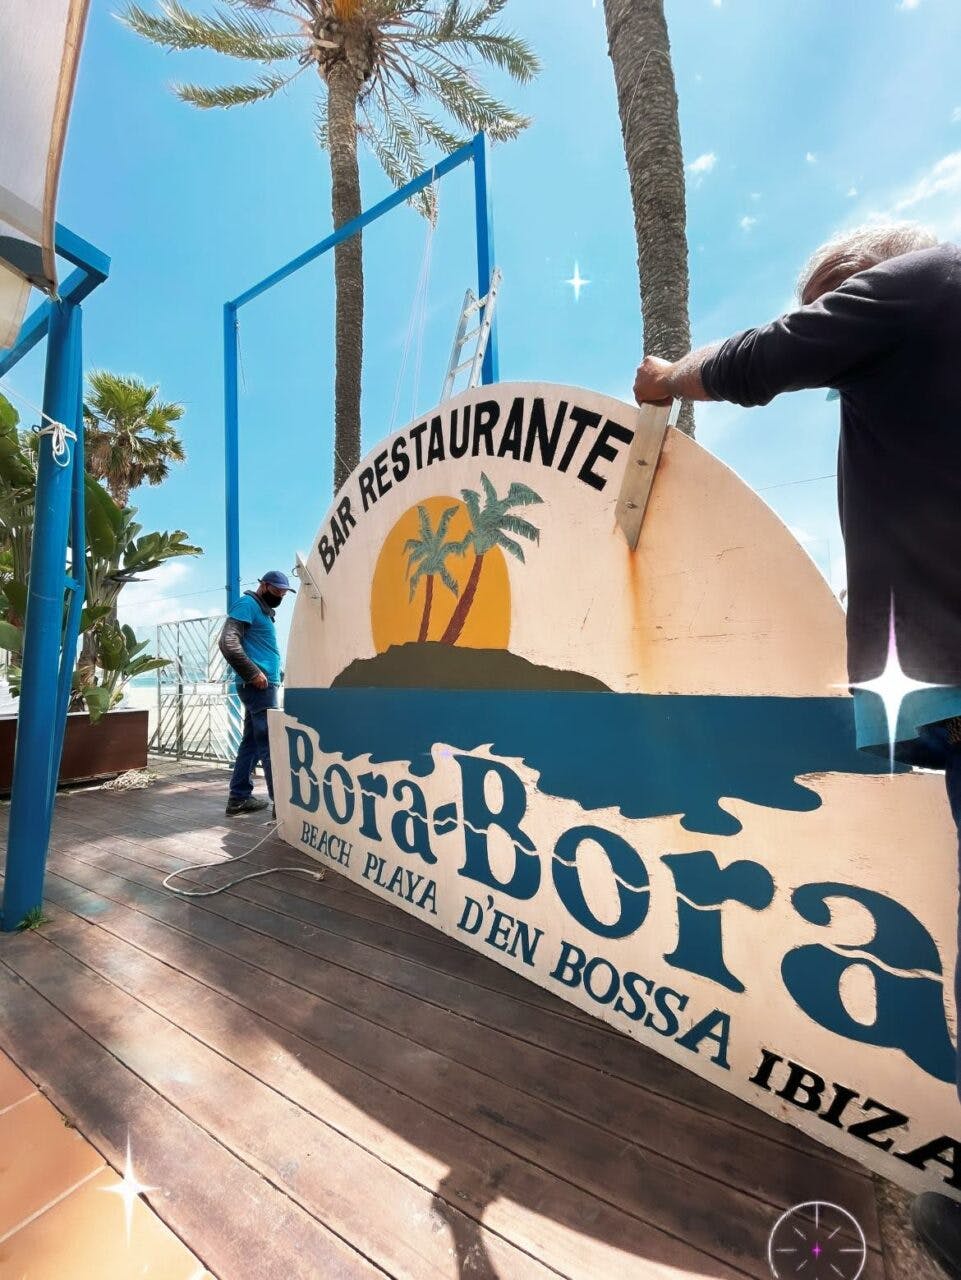 Bora Bora: Kult-Club auf Ibiza macht nach 40 Jahren dicht